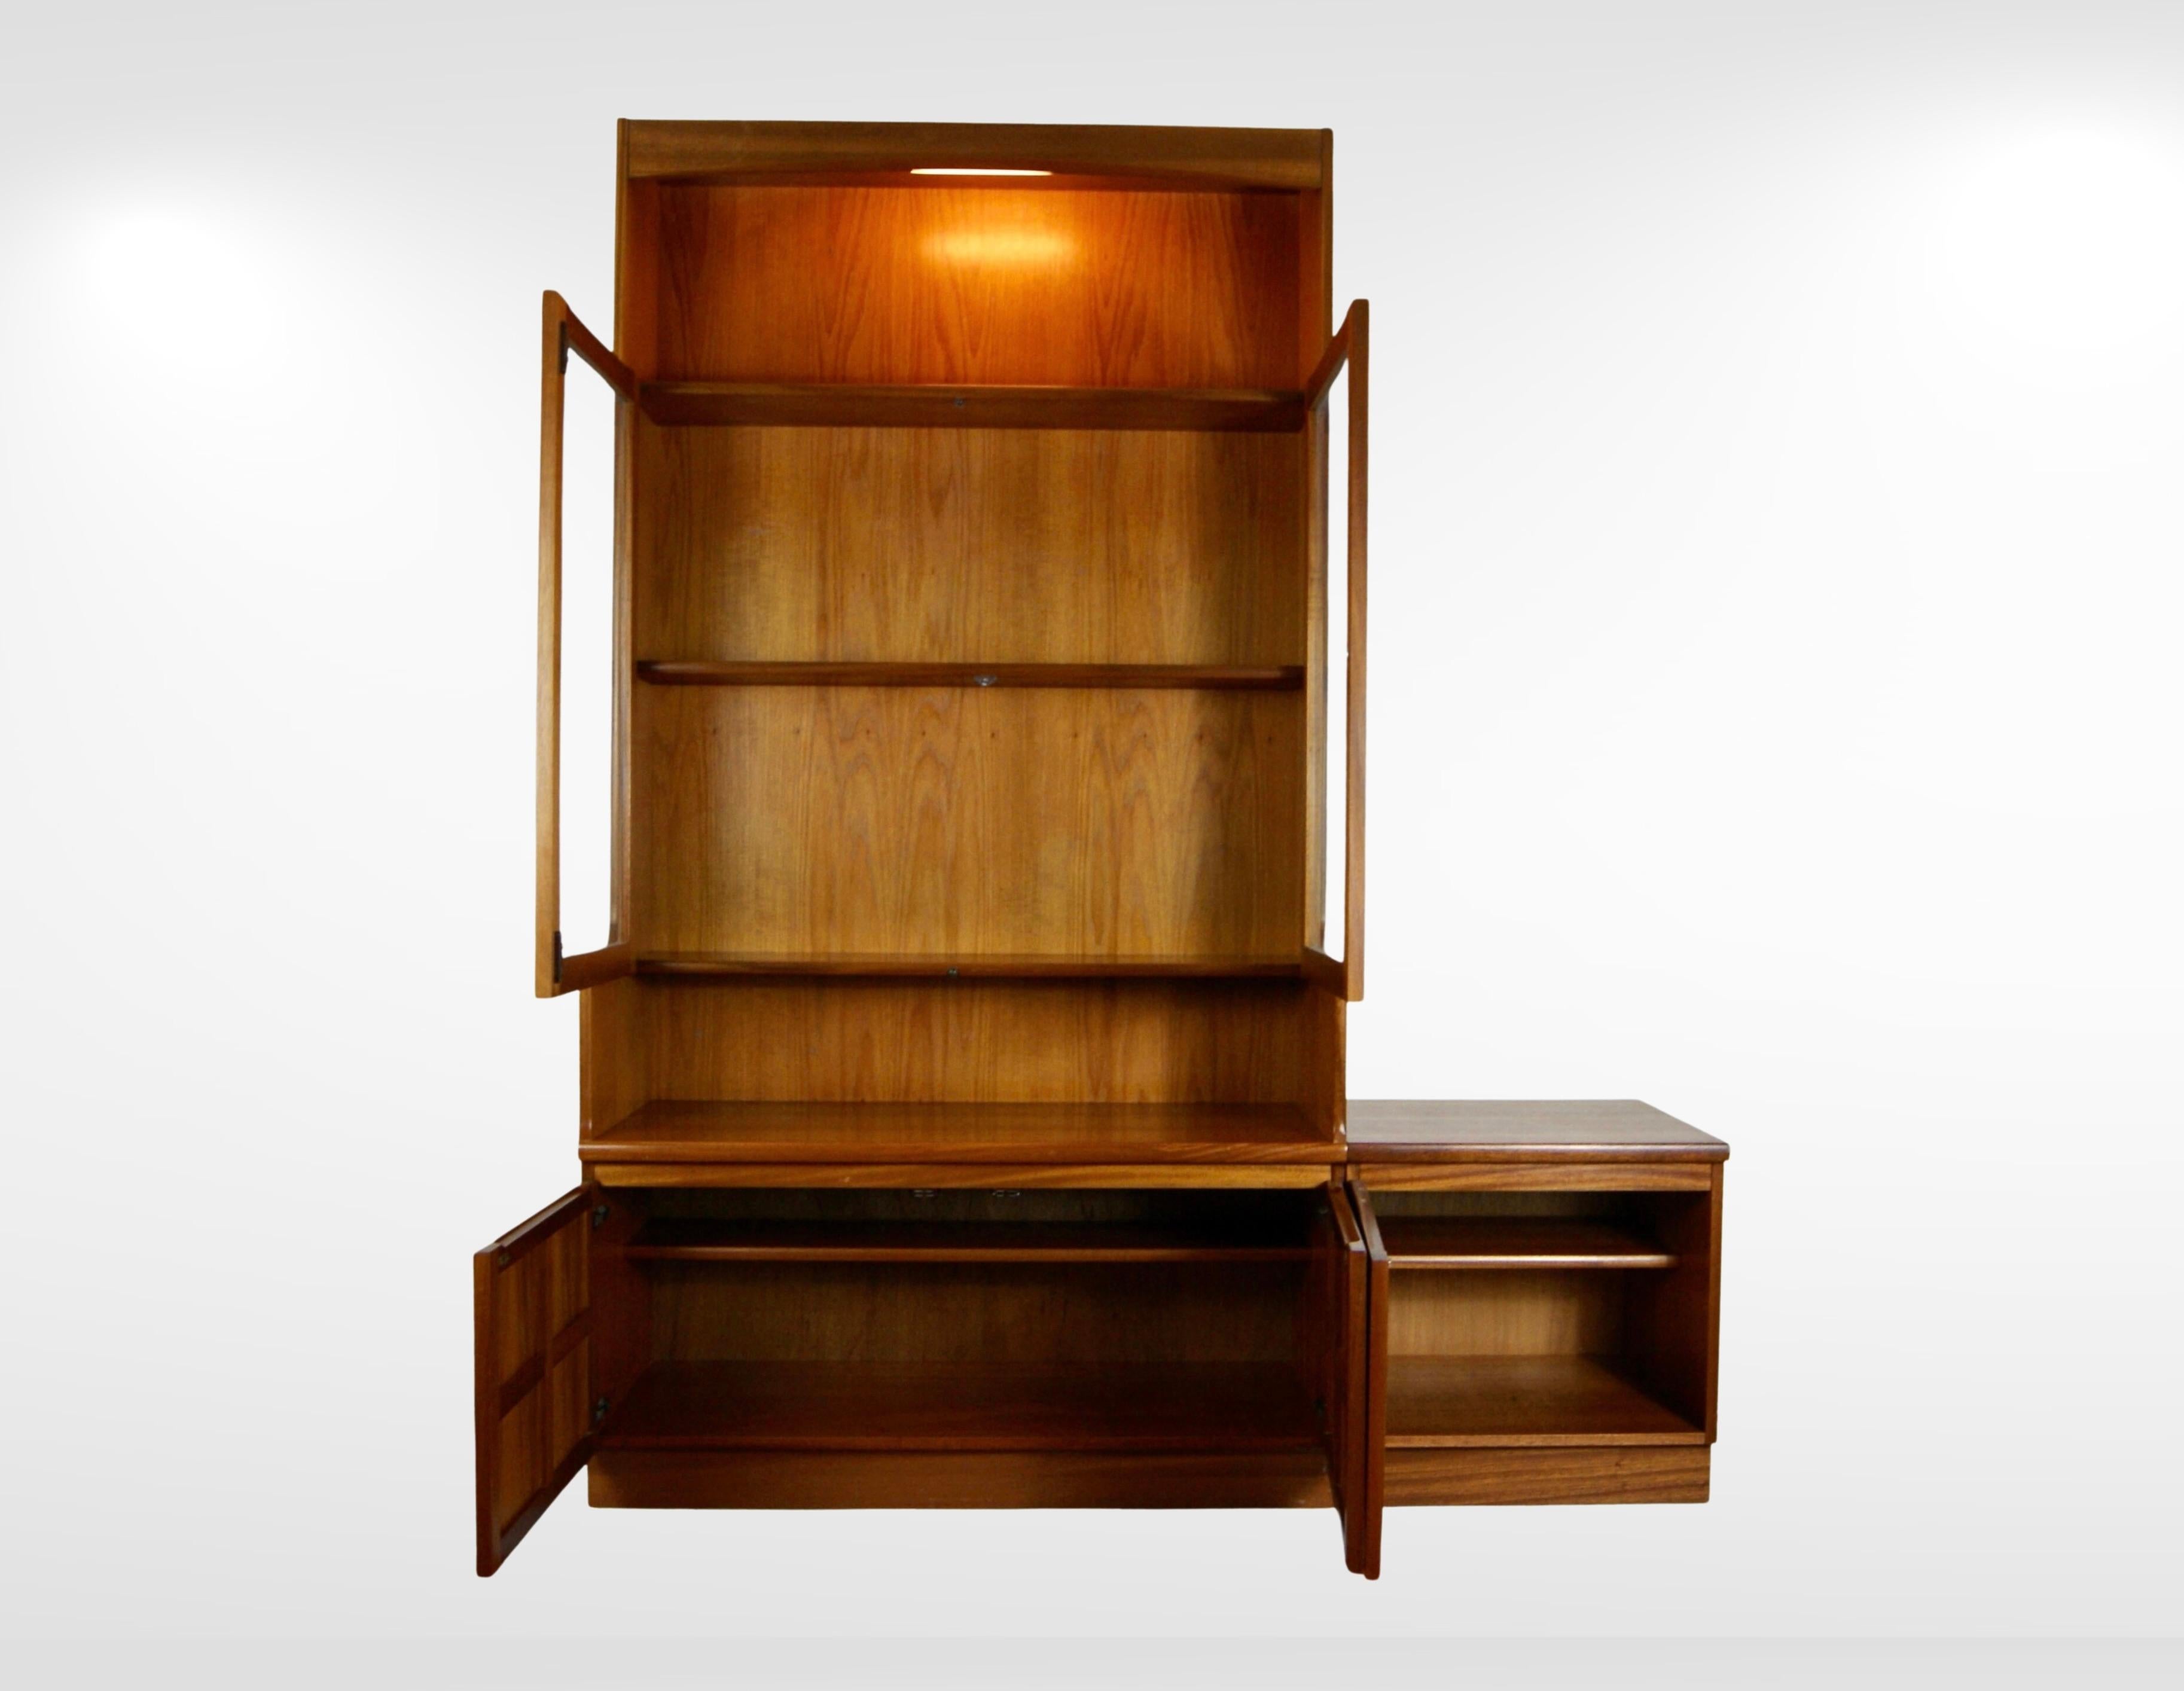 Nous vous proposons un buffet Highboard des années 1960 et un ensemble de petites armoires assorties de Nathan Furniture GB.
Fabriqué en bois de teck et en verre.
Magnifique buffet chinois du milieu du siècle.
Intérieur éclairé et portes vitrées